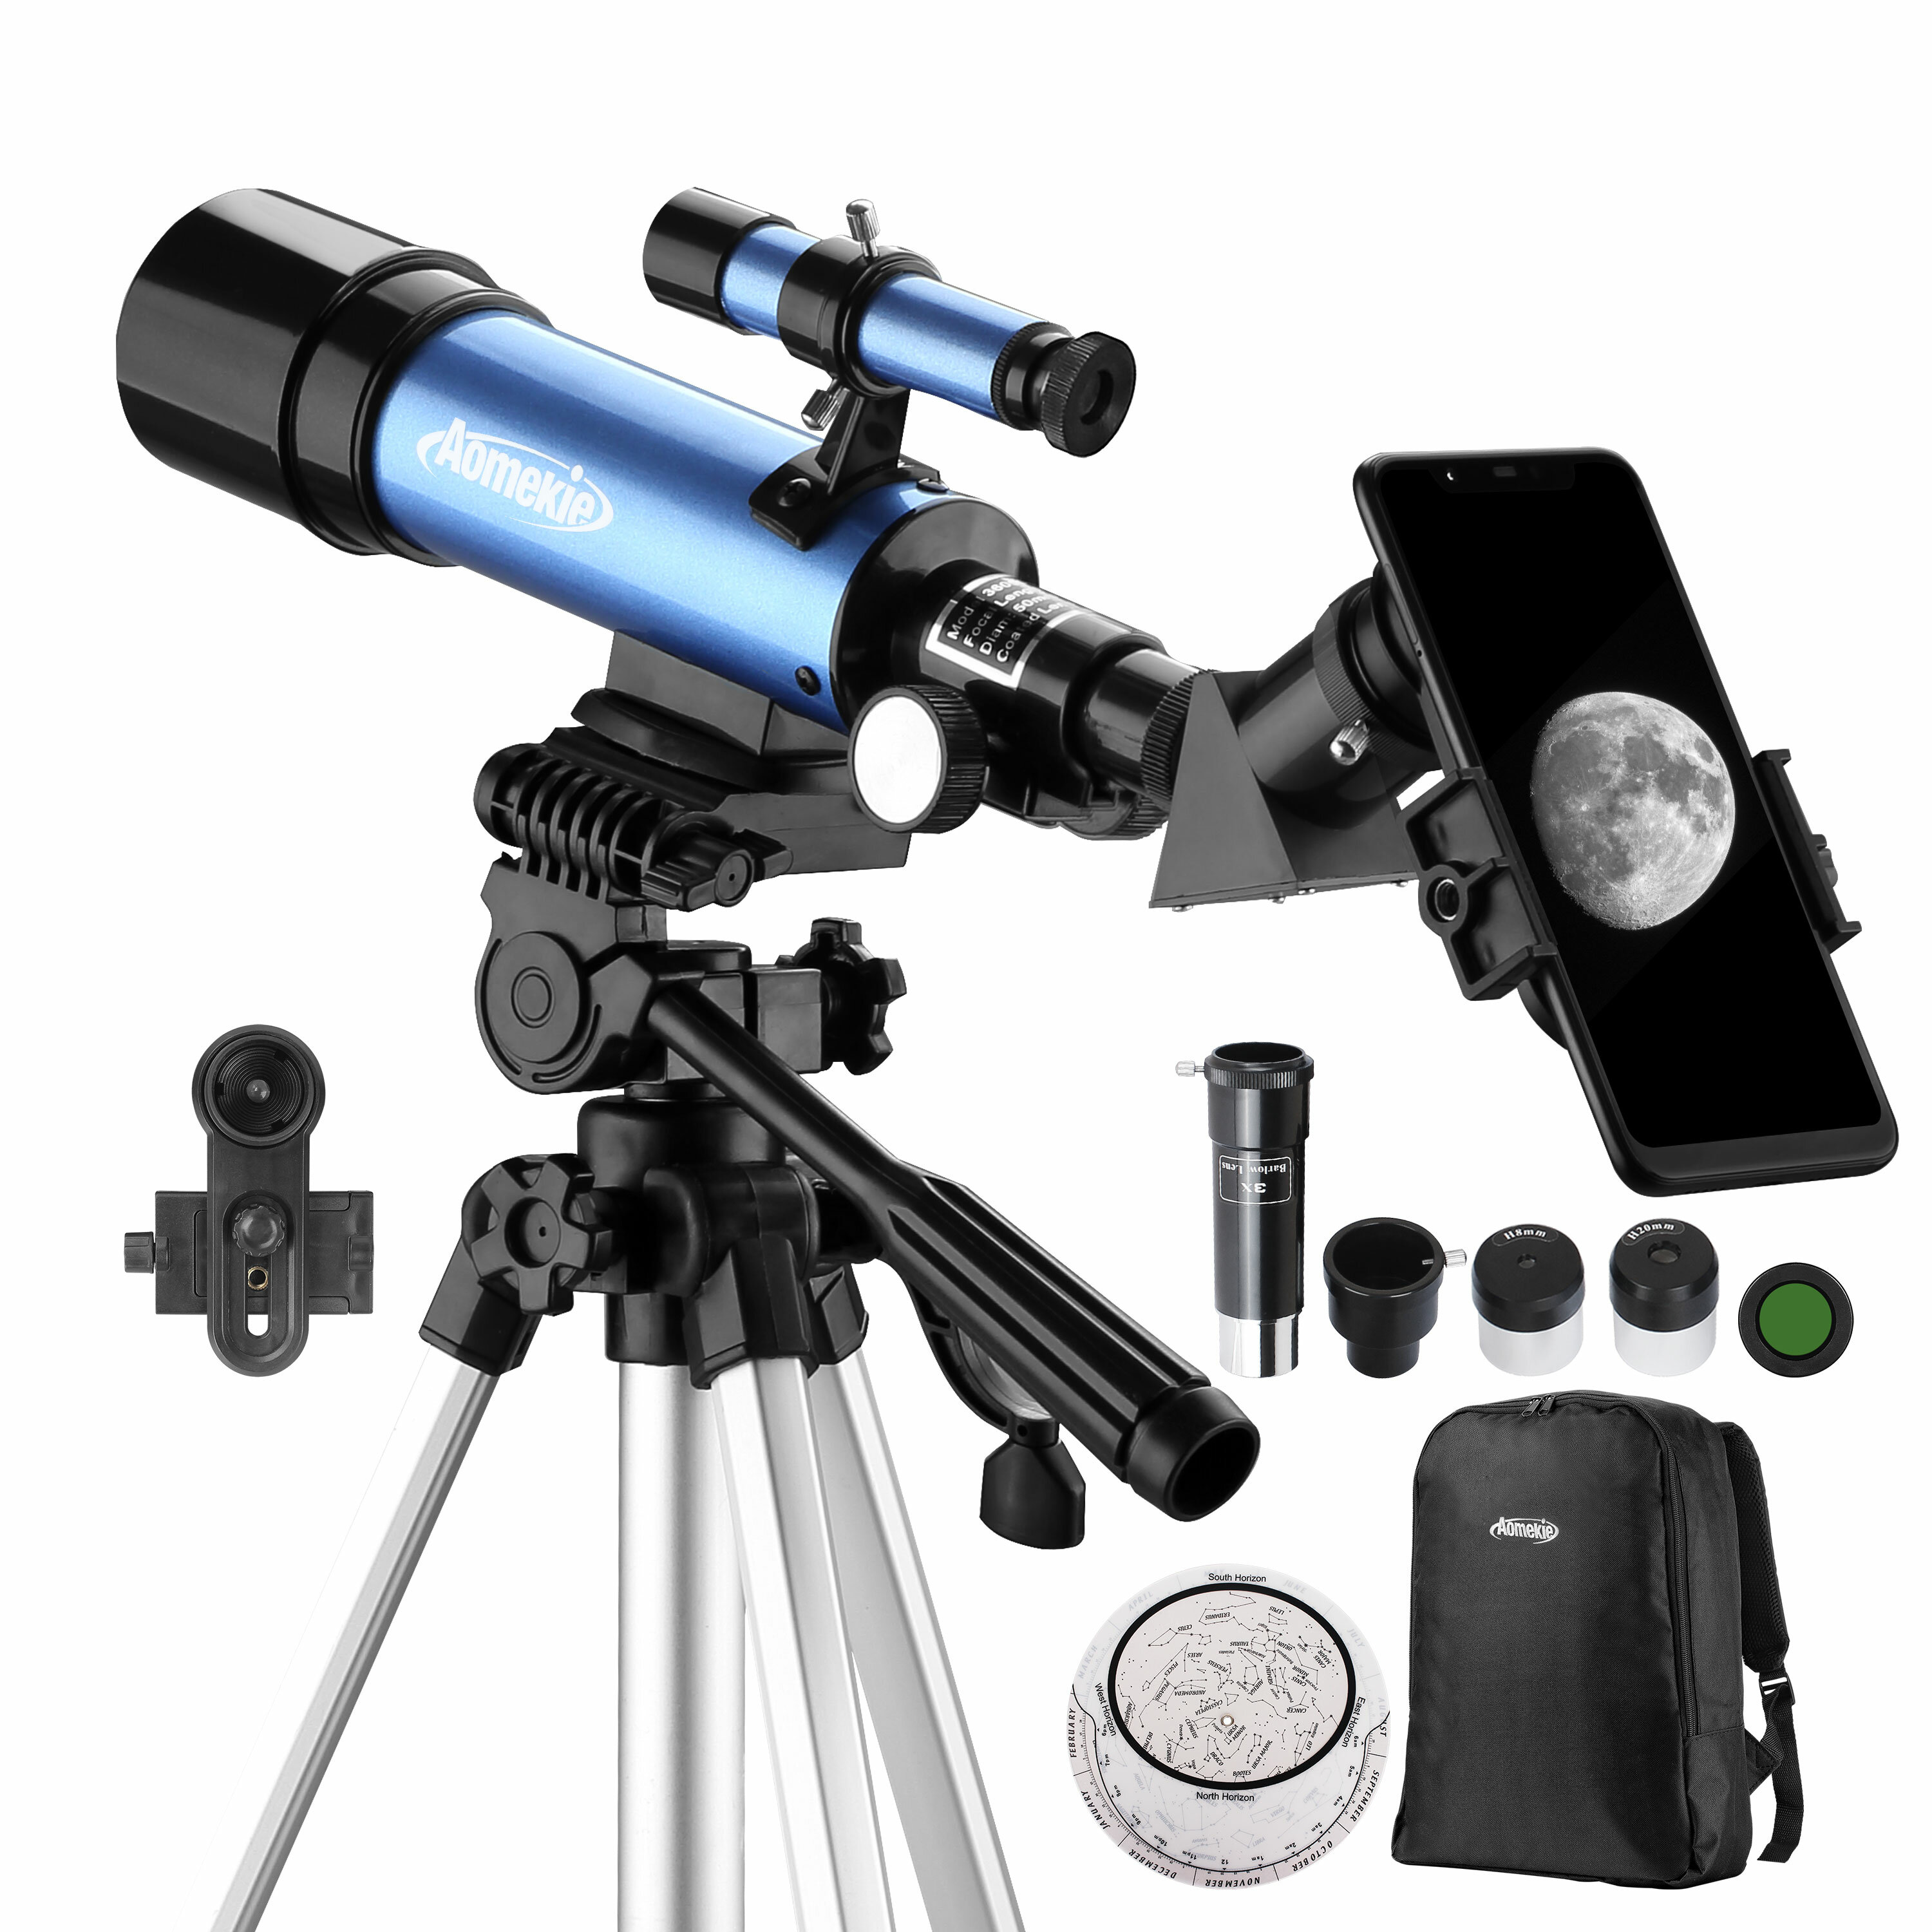 Telescopio astronómico AOMEKIE 18X-135X con apertura de 50 mm, tipo refractor, con adaptador para teléfono y trípode ajustable para principiantes en astronomía.